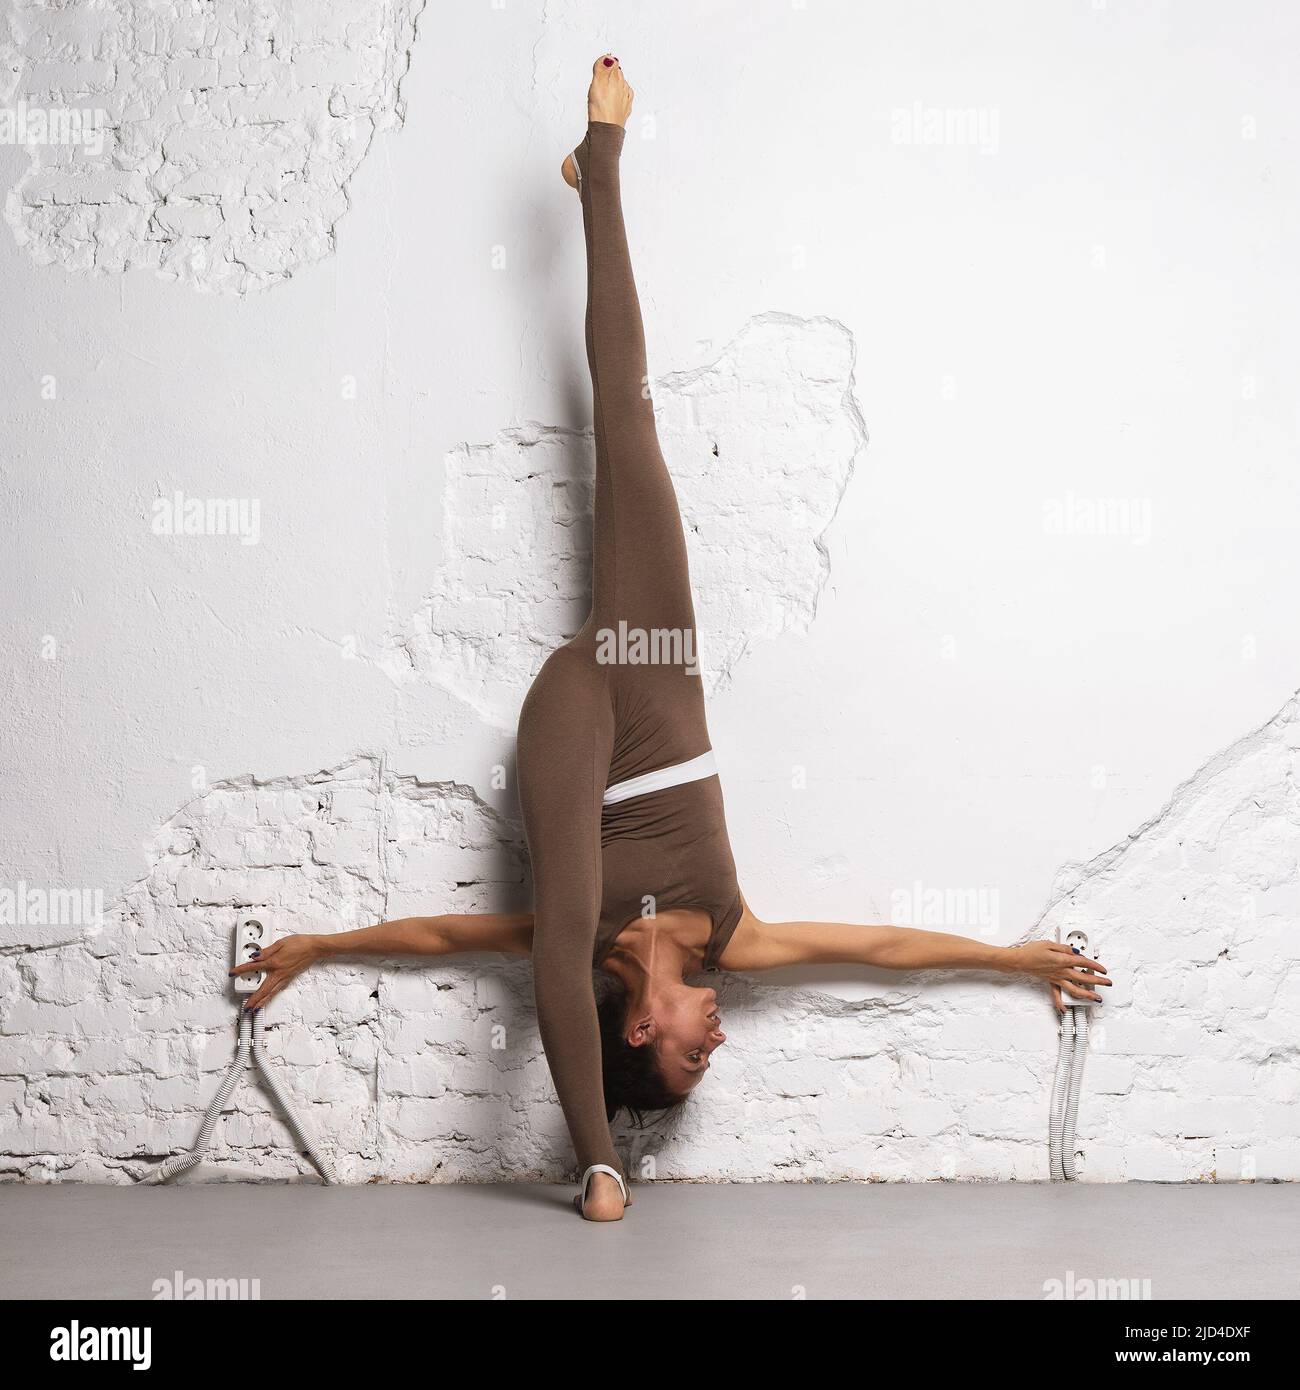 Eine Frau dehnt die Muskeln ihrer Beine aus, führt einen Längsschnitt durch, lehnt ihren Rücken an die Wand und trainiert im Raum Stockfoto